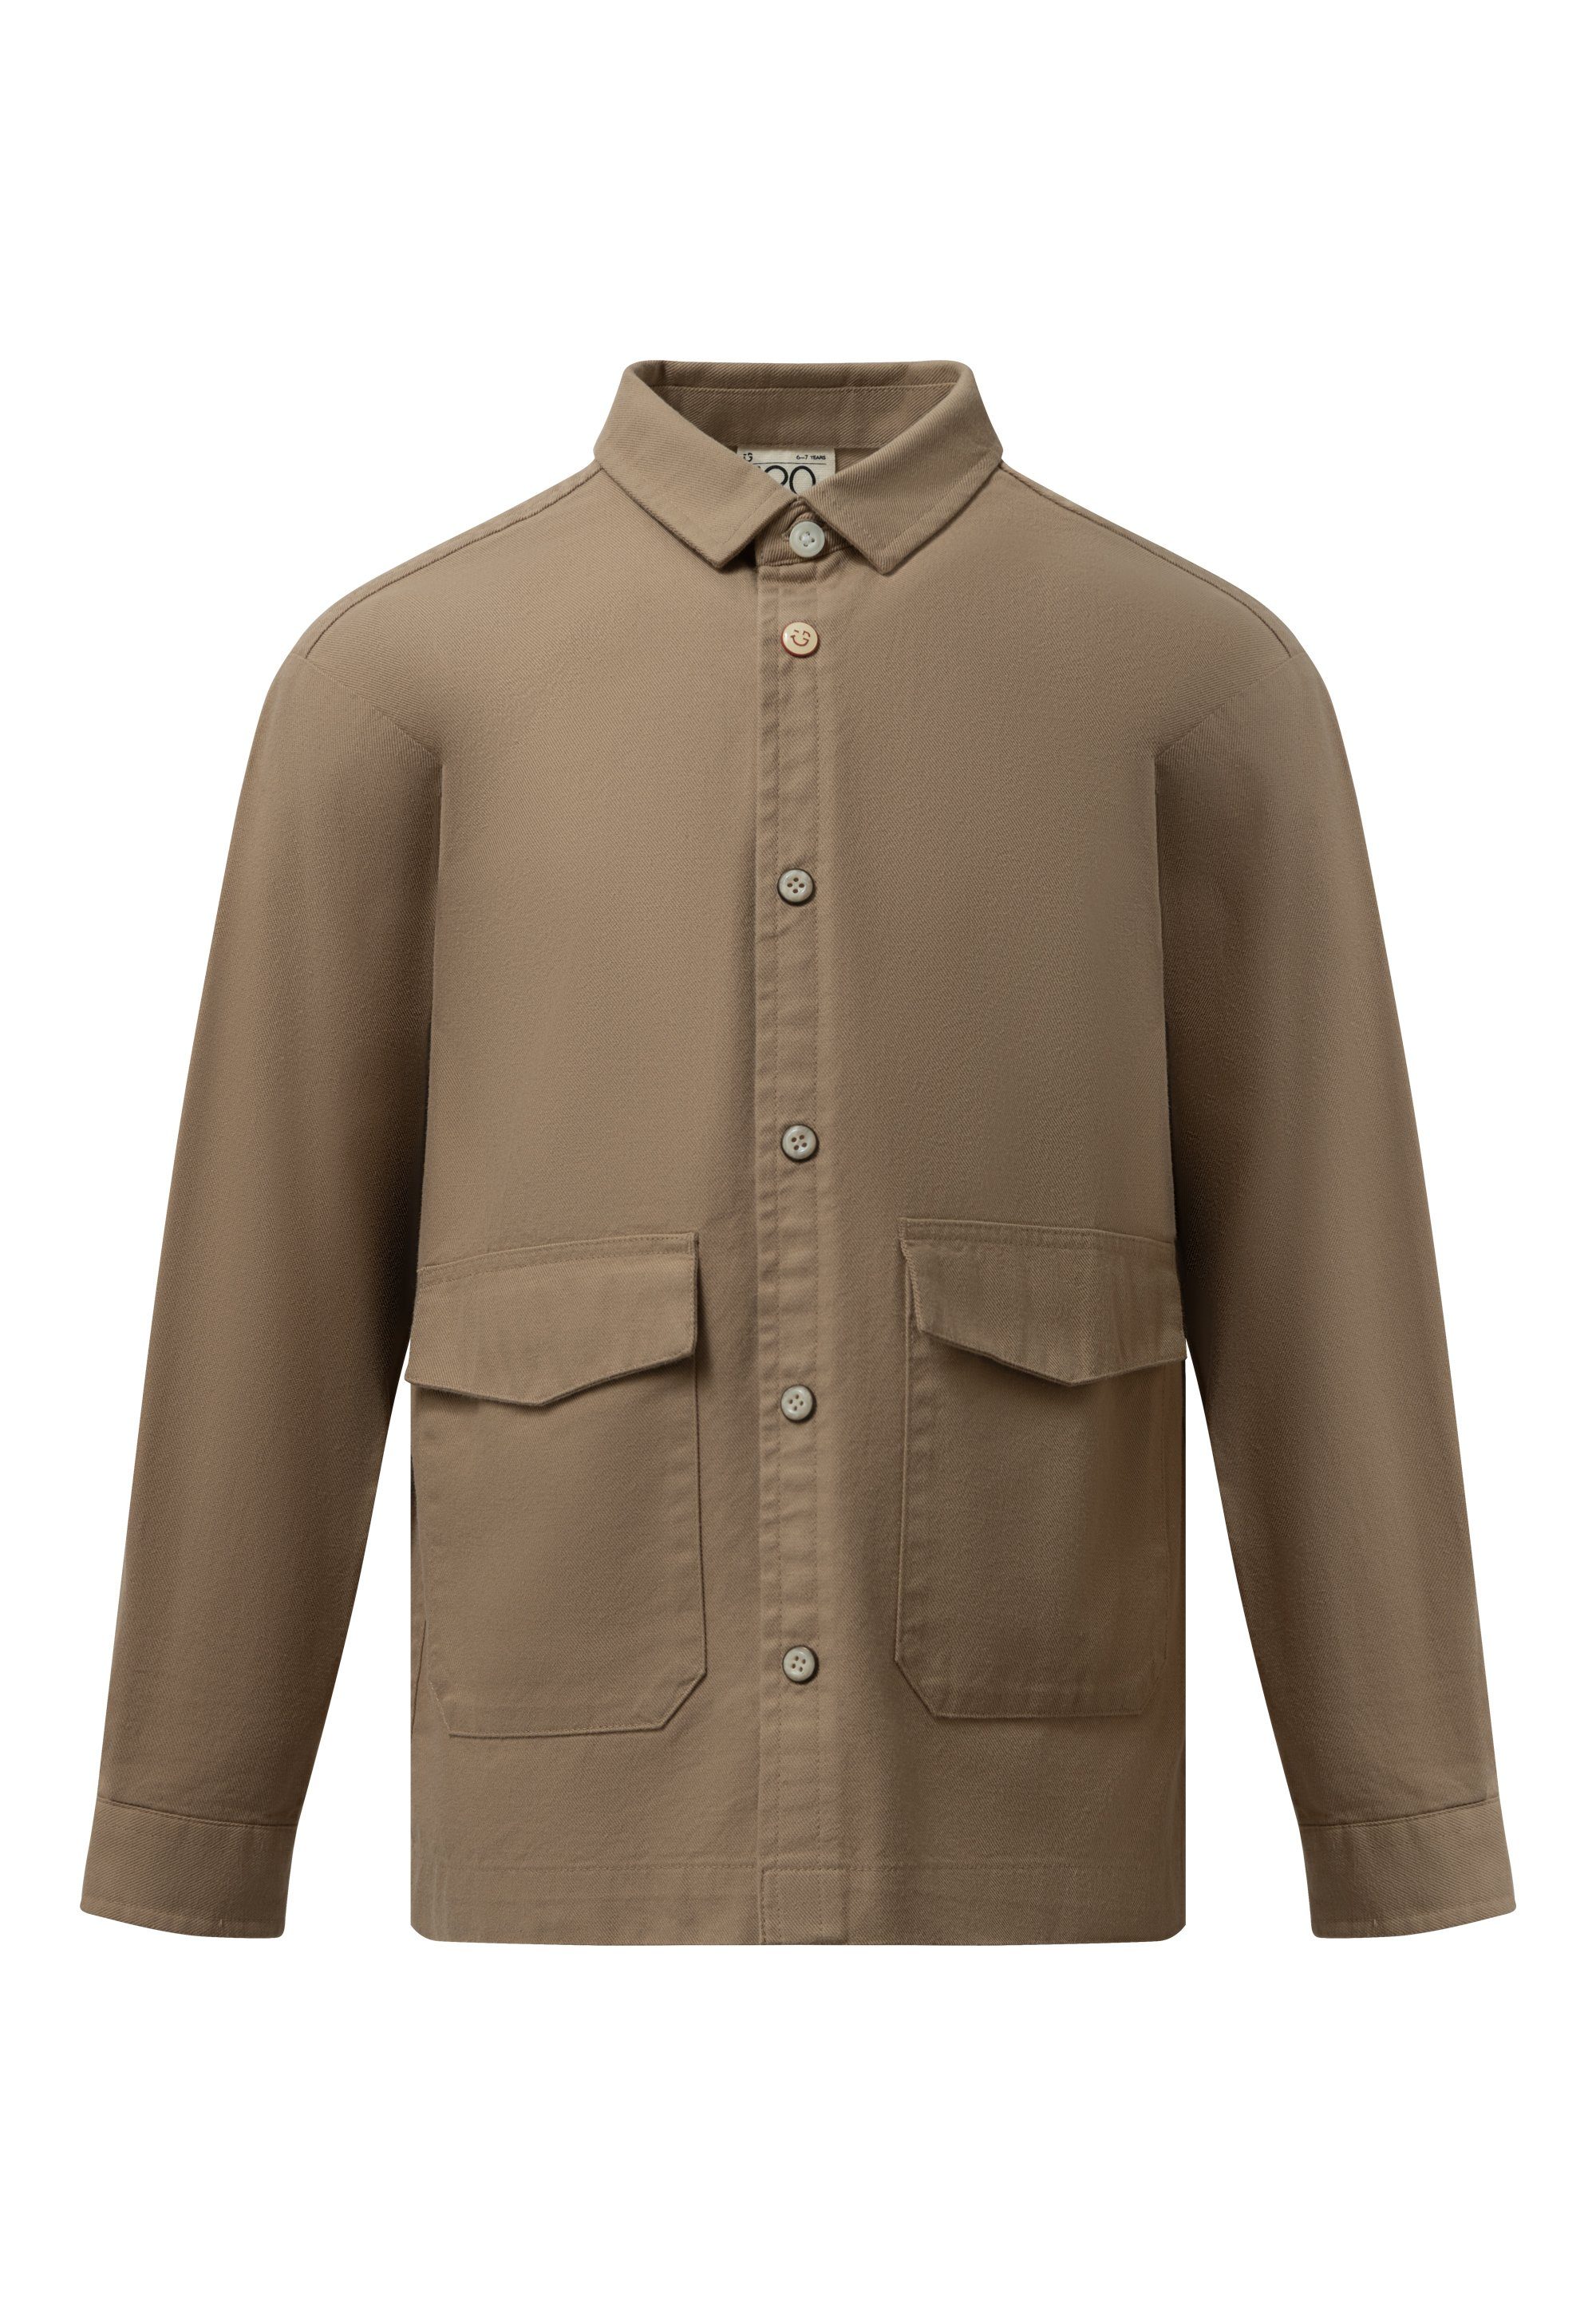 GIORDANO junior Langarmhemd mit aufgesetzten Taschen khaki | Hemden